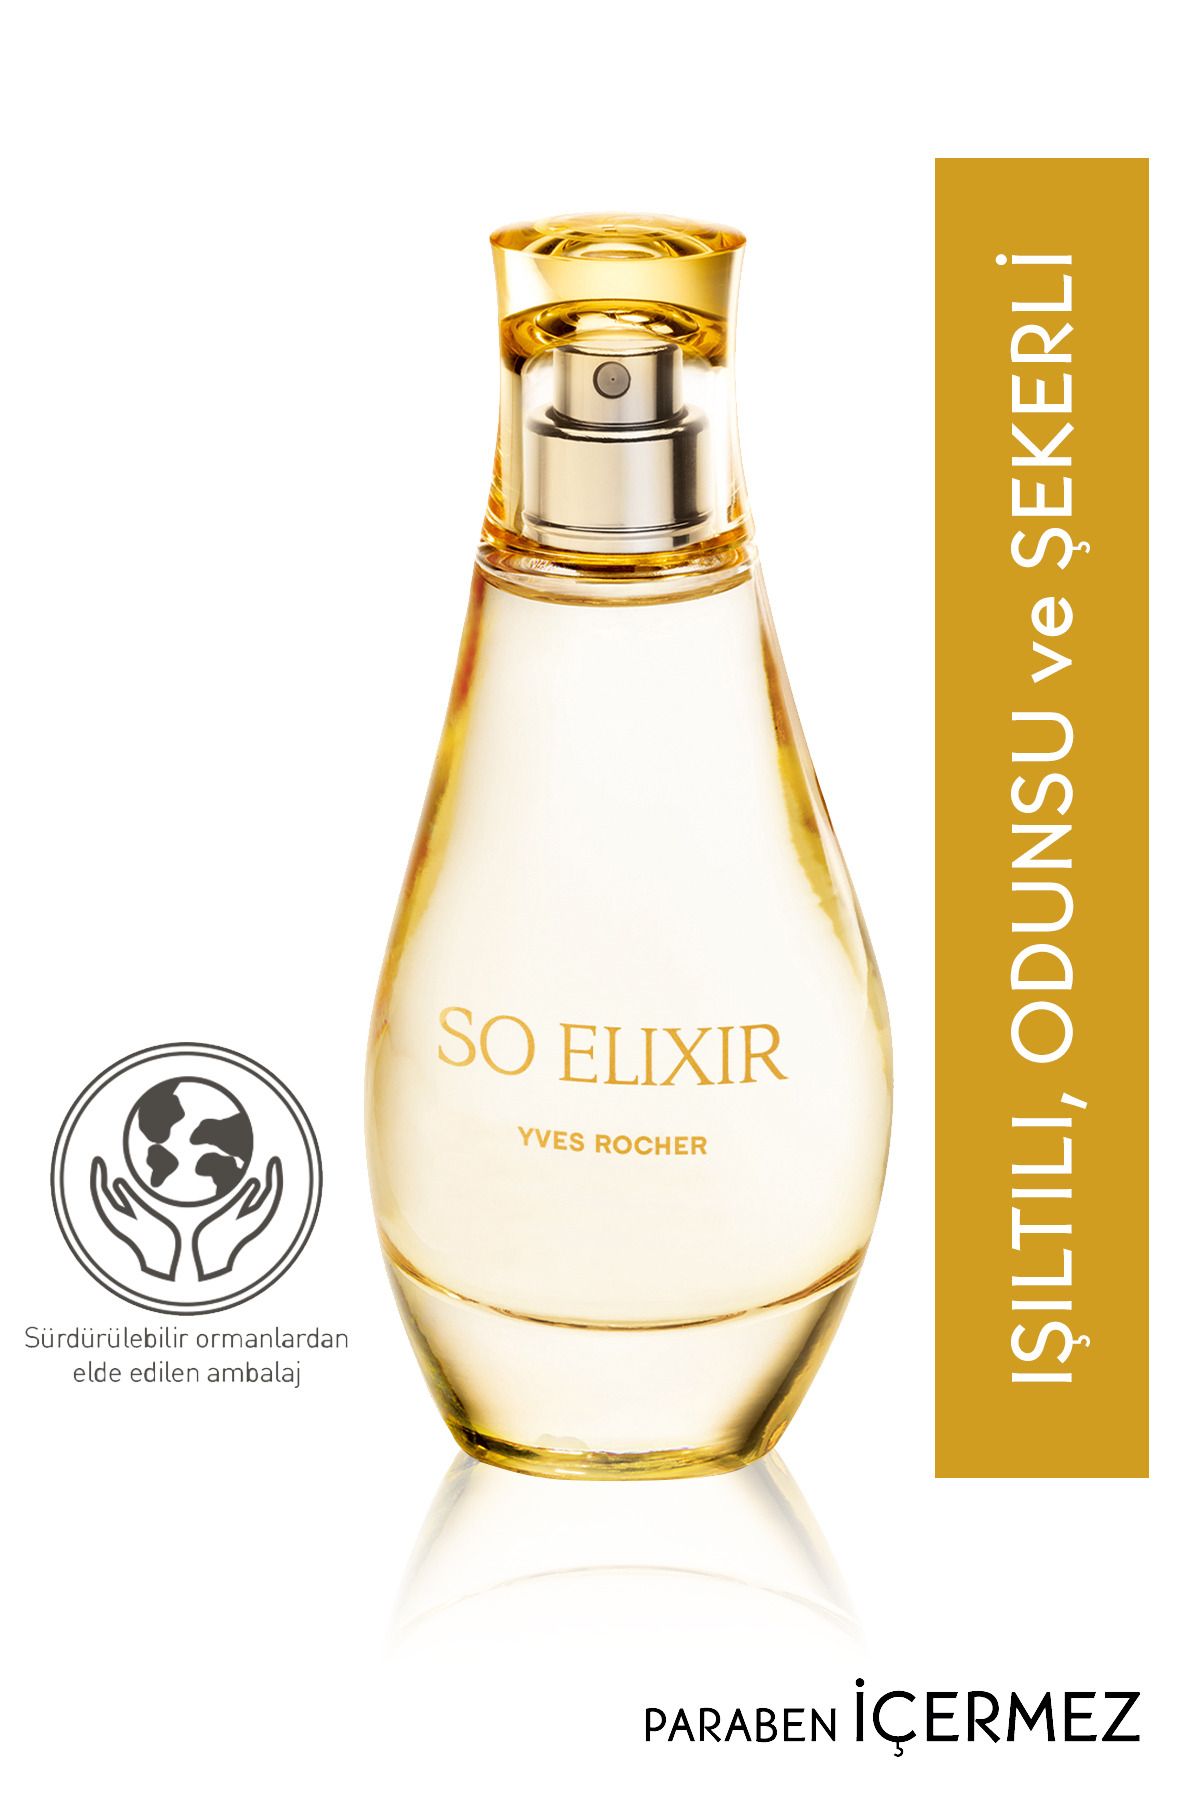 Yves Rocher عطر زنانه So Elixir رایحه ای رمانتیک و جذاب 50میل